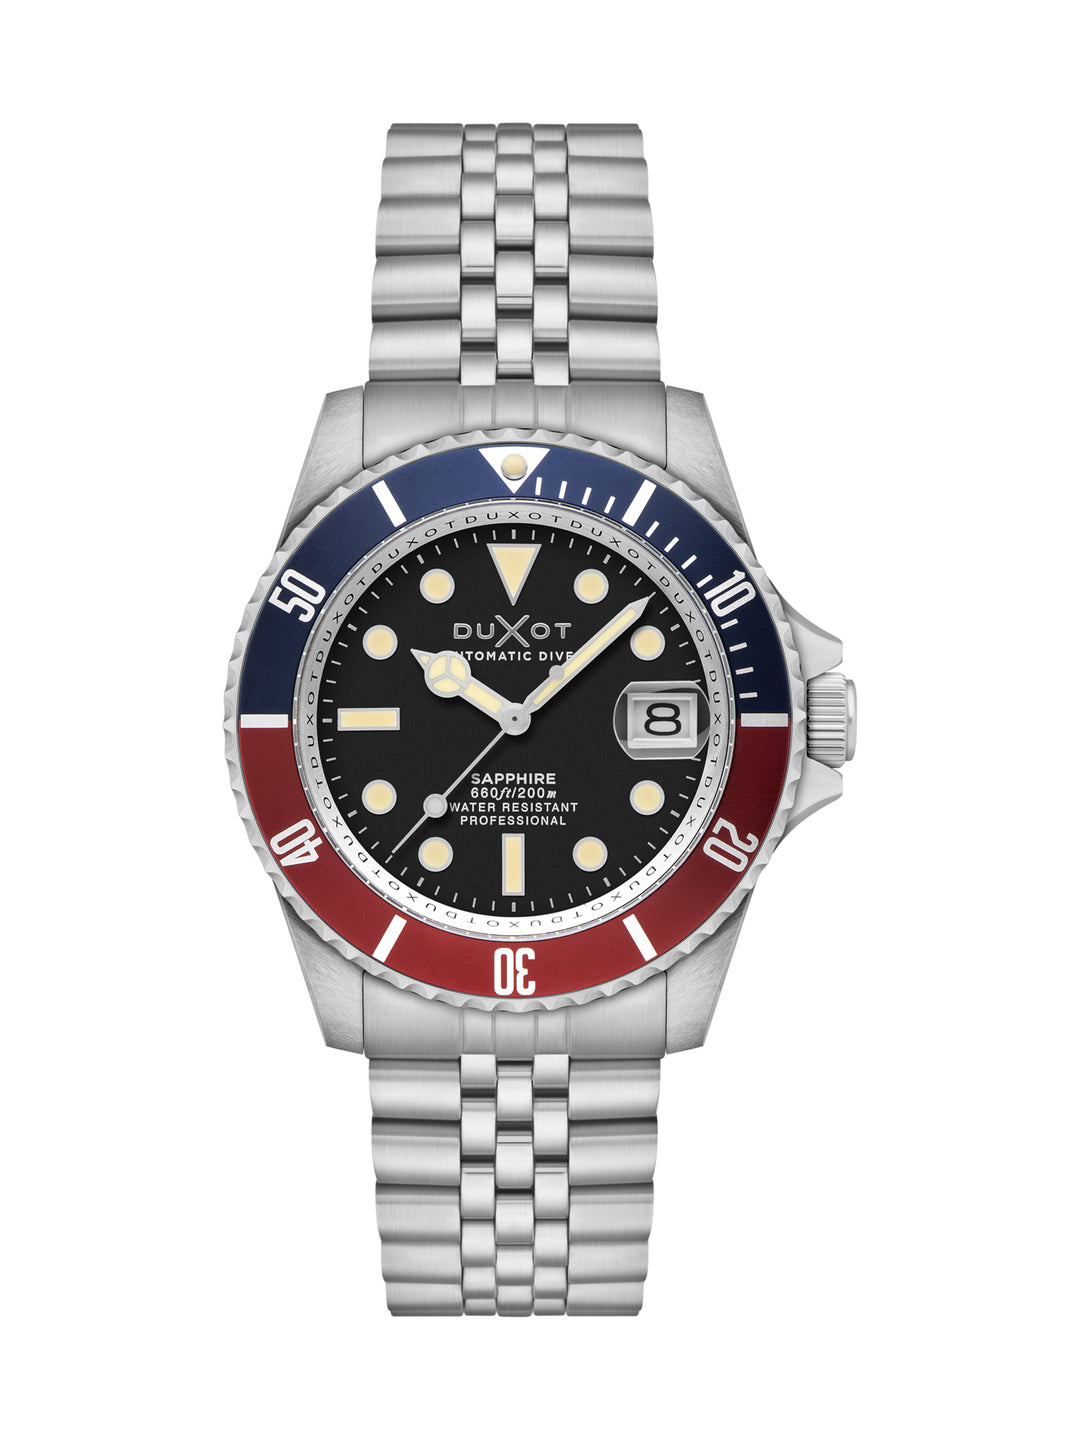 Duxot Atlantica Diver Automatic 24 Jewels Men's Watch -  DX-2057-11